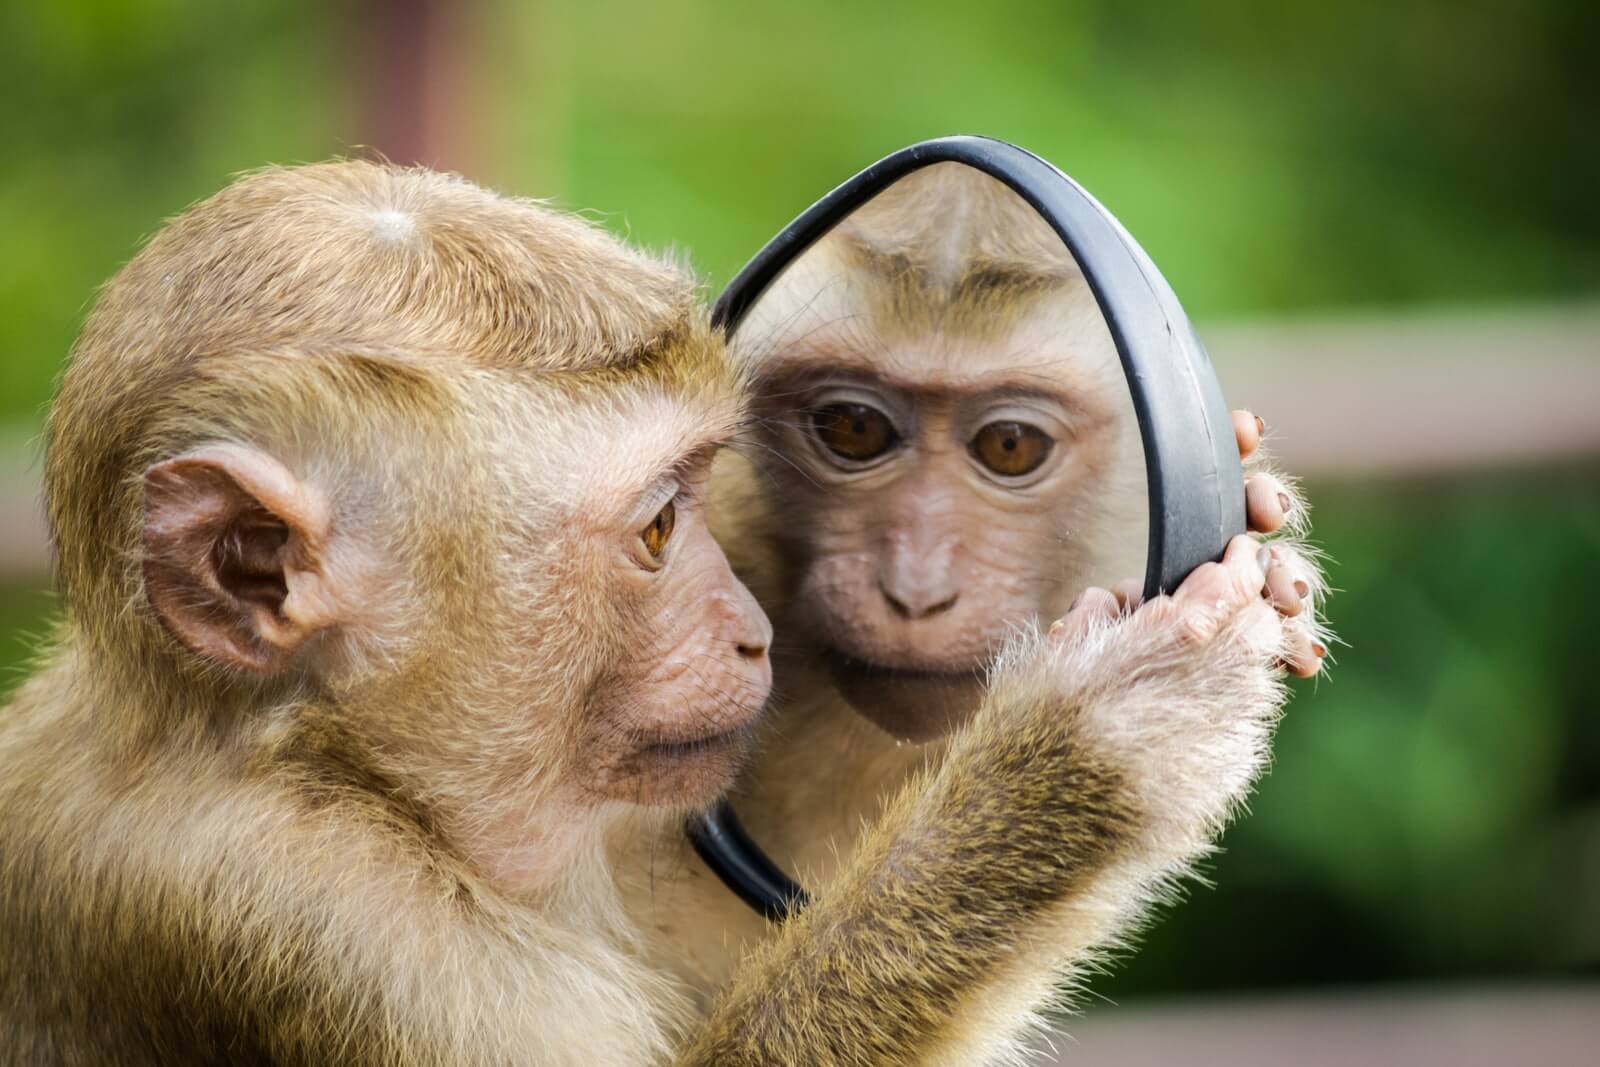 Pourquoi installer un miroir pour se voir et se sentir mieux ? | Photo par Andre Mouton